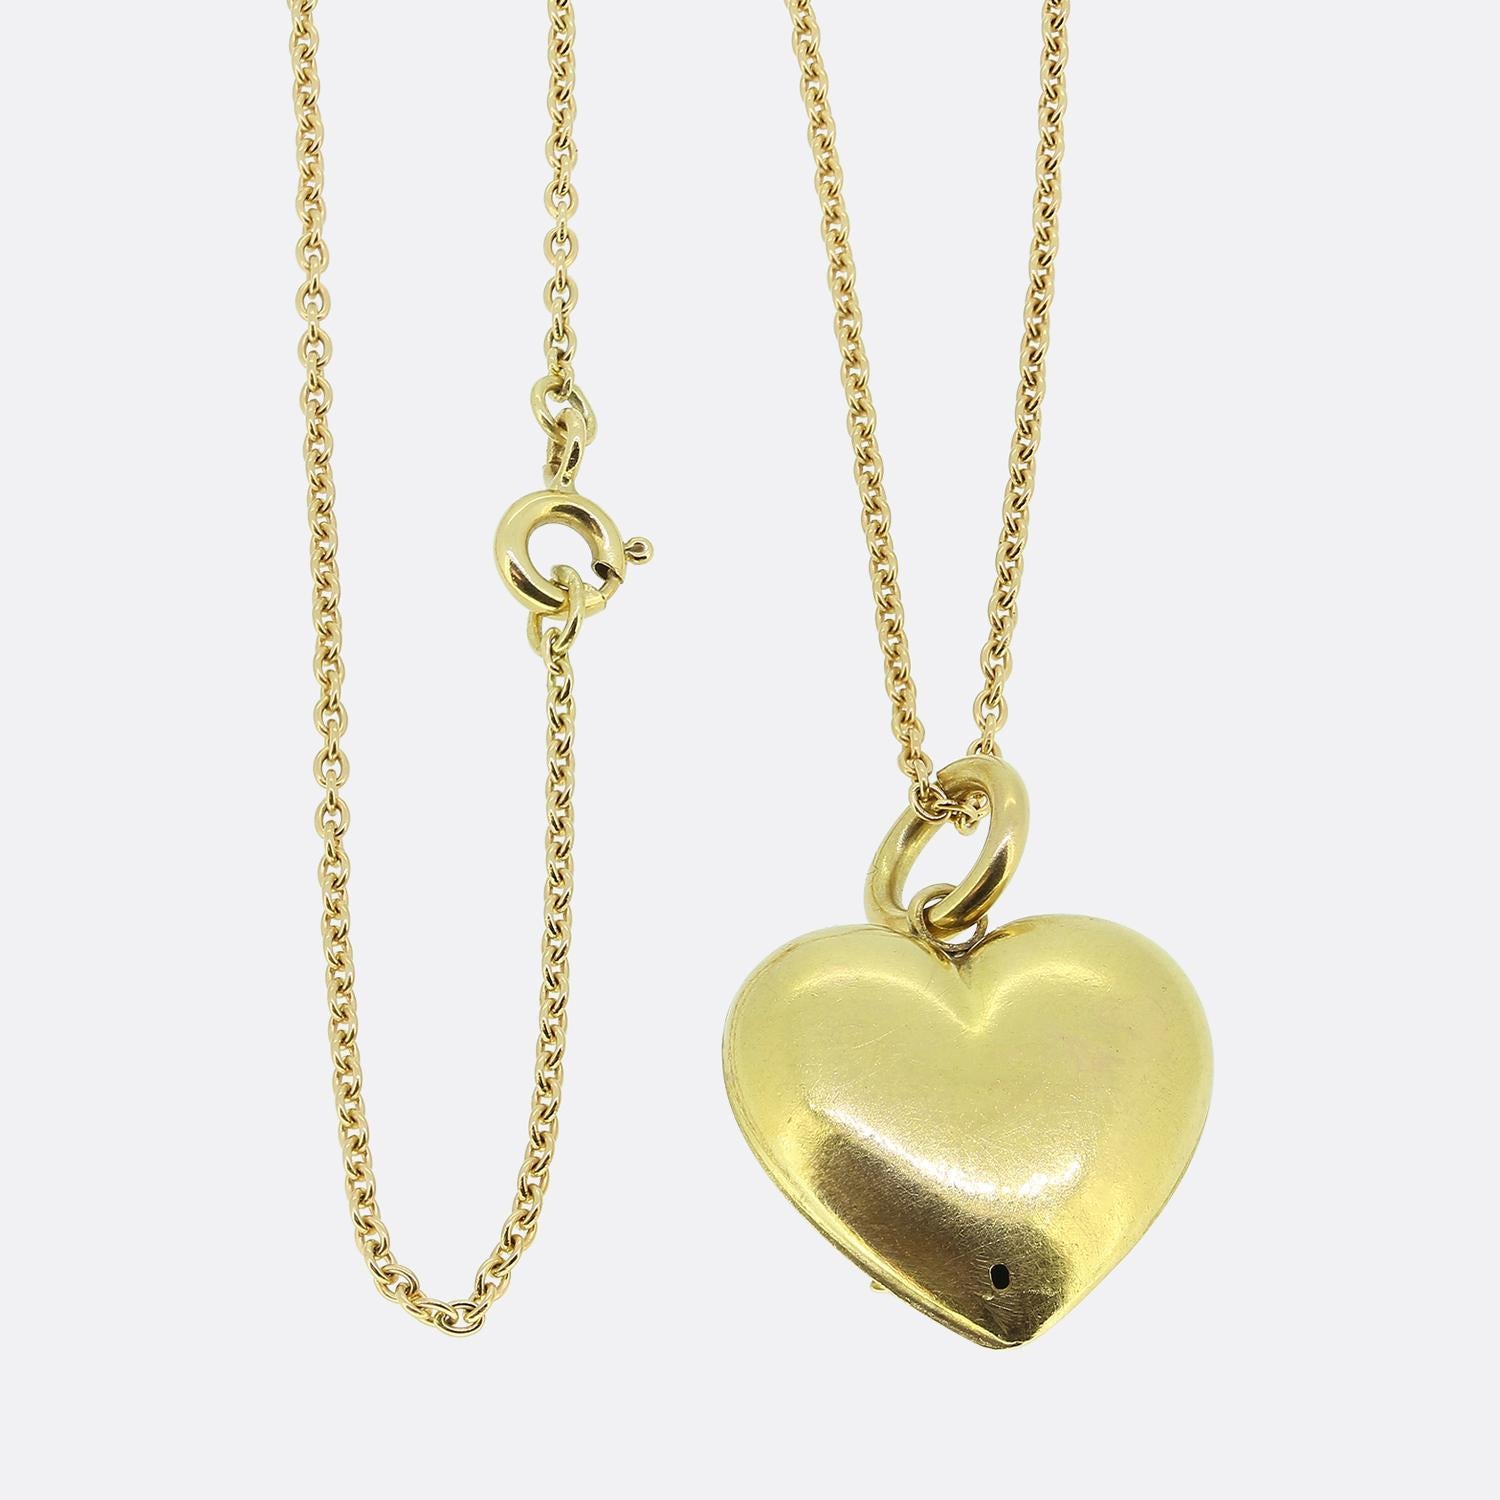 Voici un collier à pendentifs en or jaune 15ct, serti de perles, d'une excellente facture. Ce pendentif antique prend la forme d'un cœur d'amour qui accueille en son centre un motif de trèfle à trois feuilles finement détaillé. Ce modèle a été serti